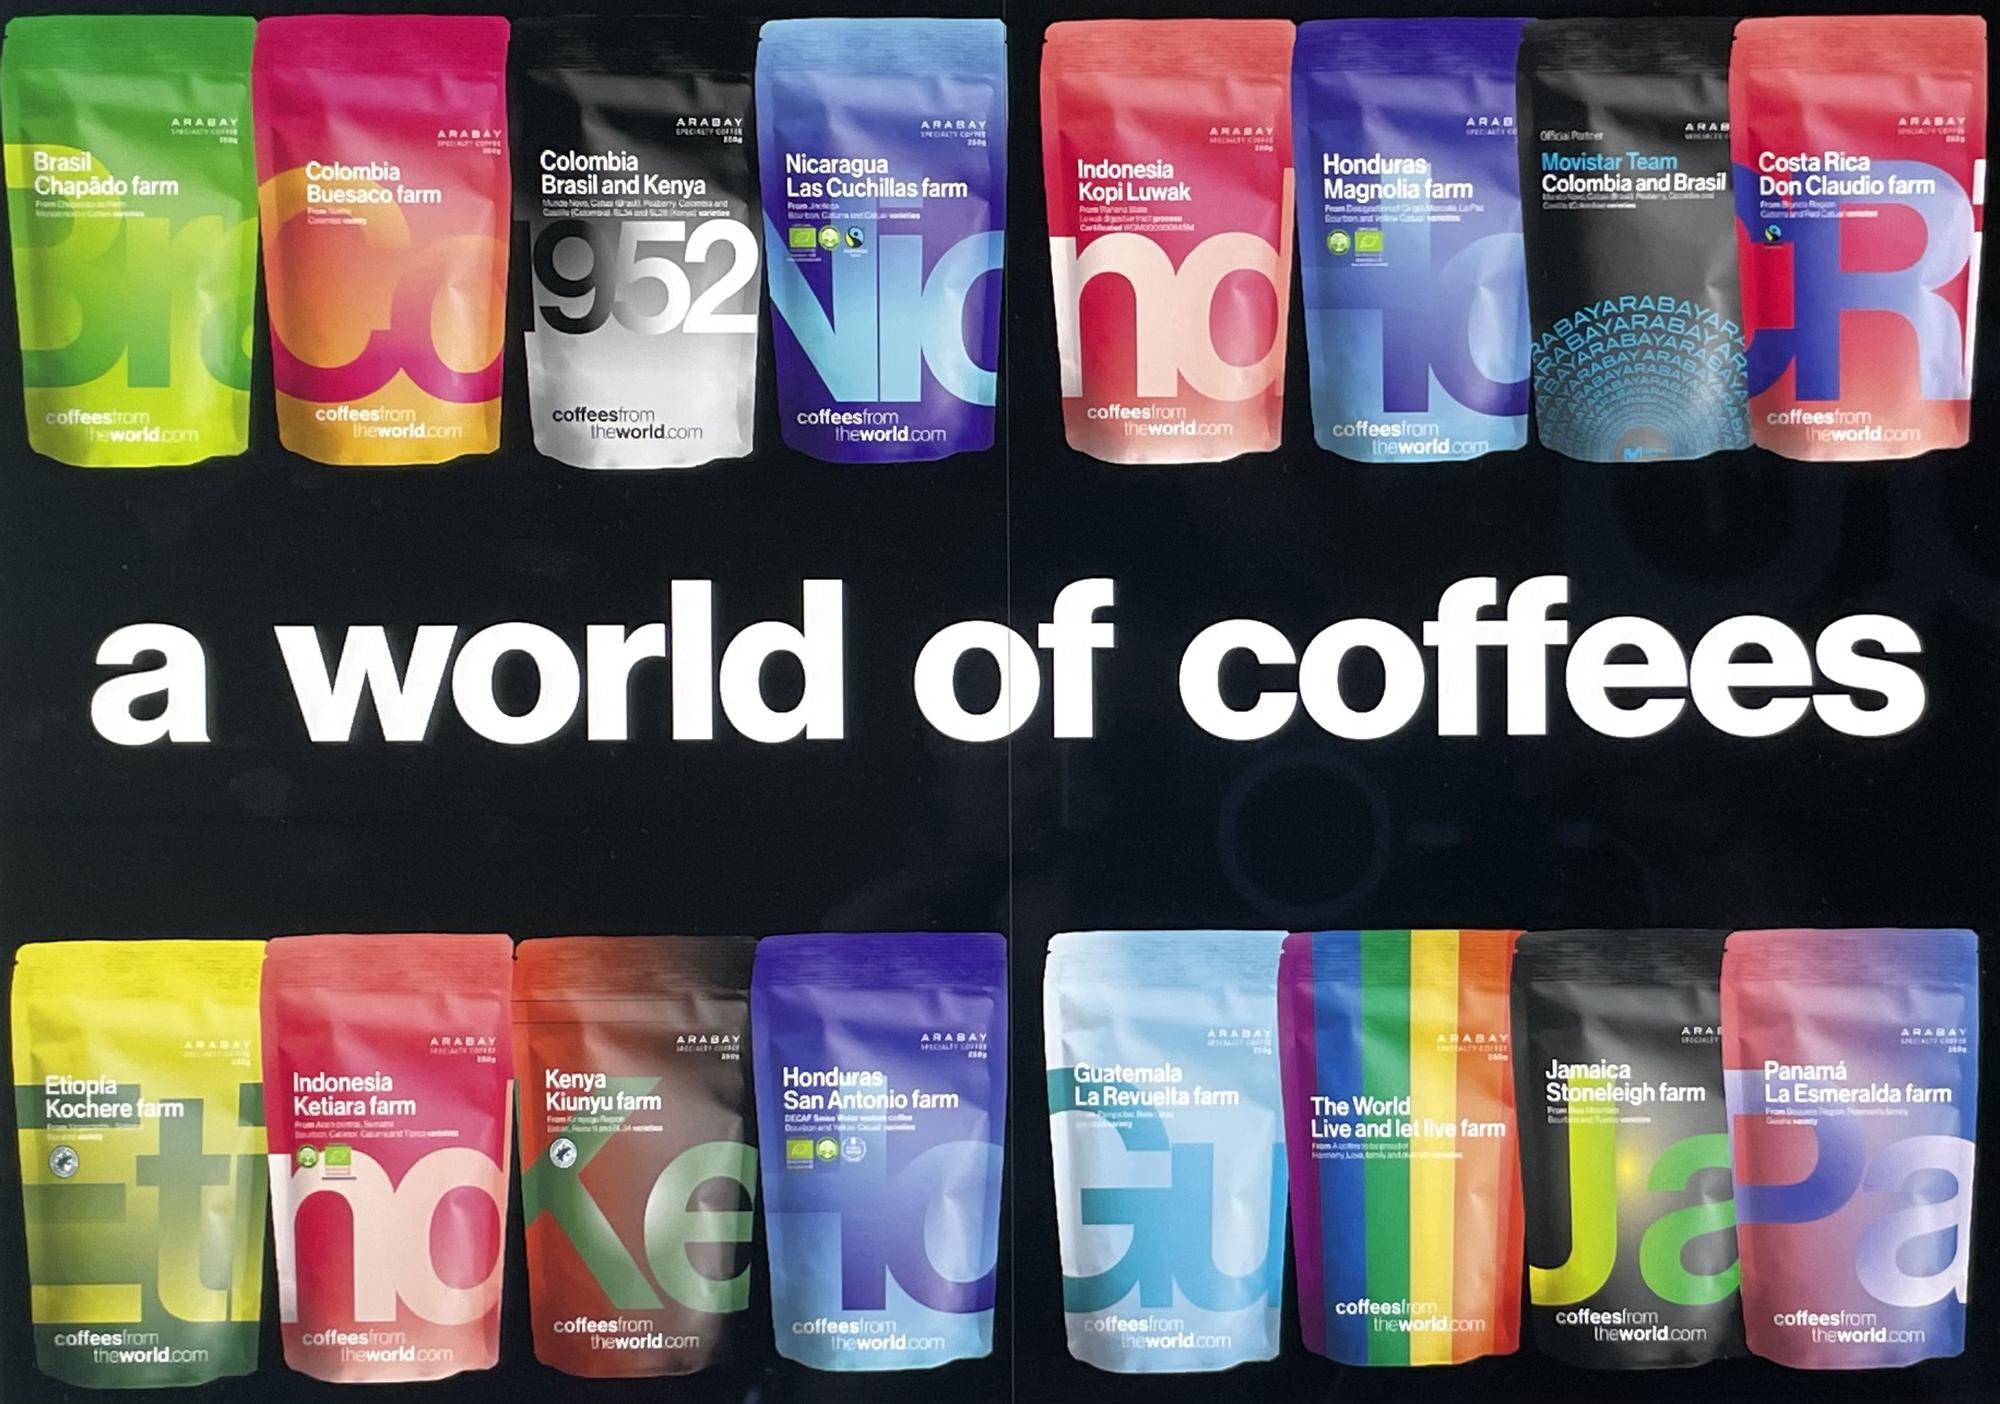 Gran variedad de cafés de especialidad bajo la marca Coffees from the World by Arabay